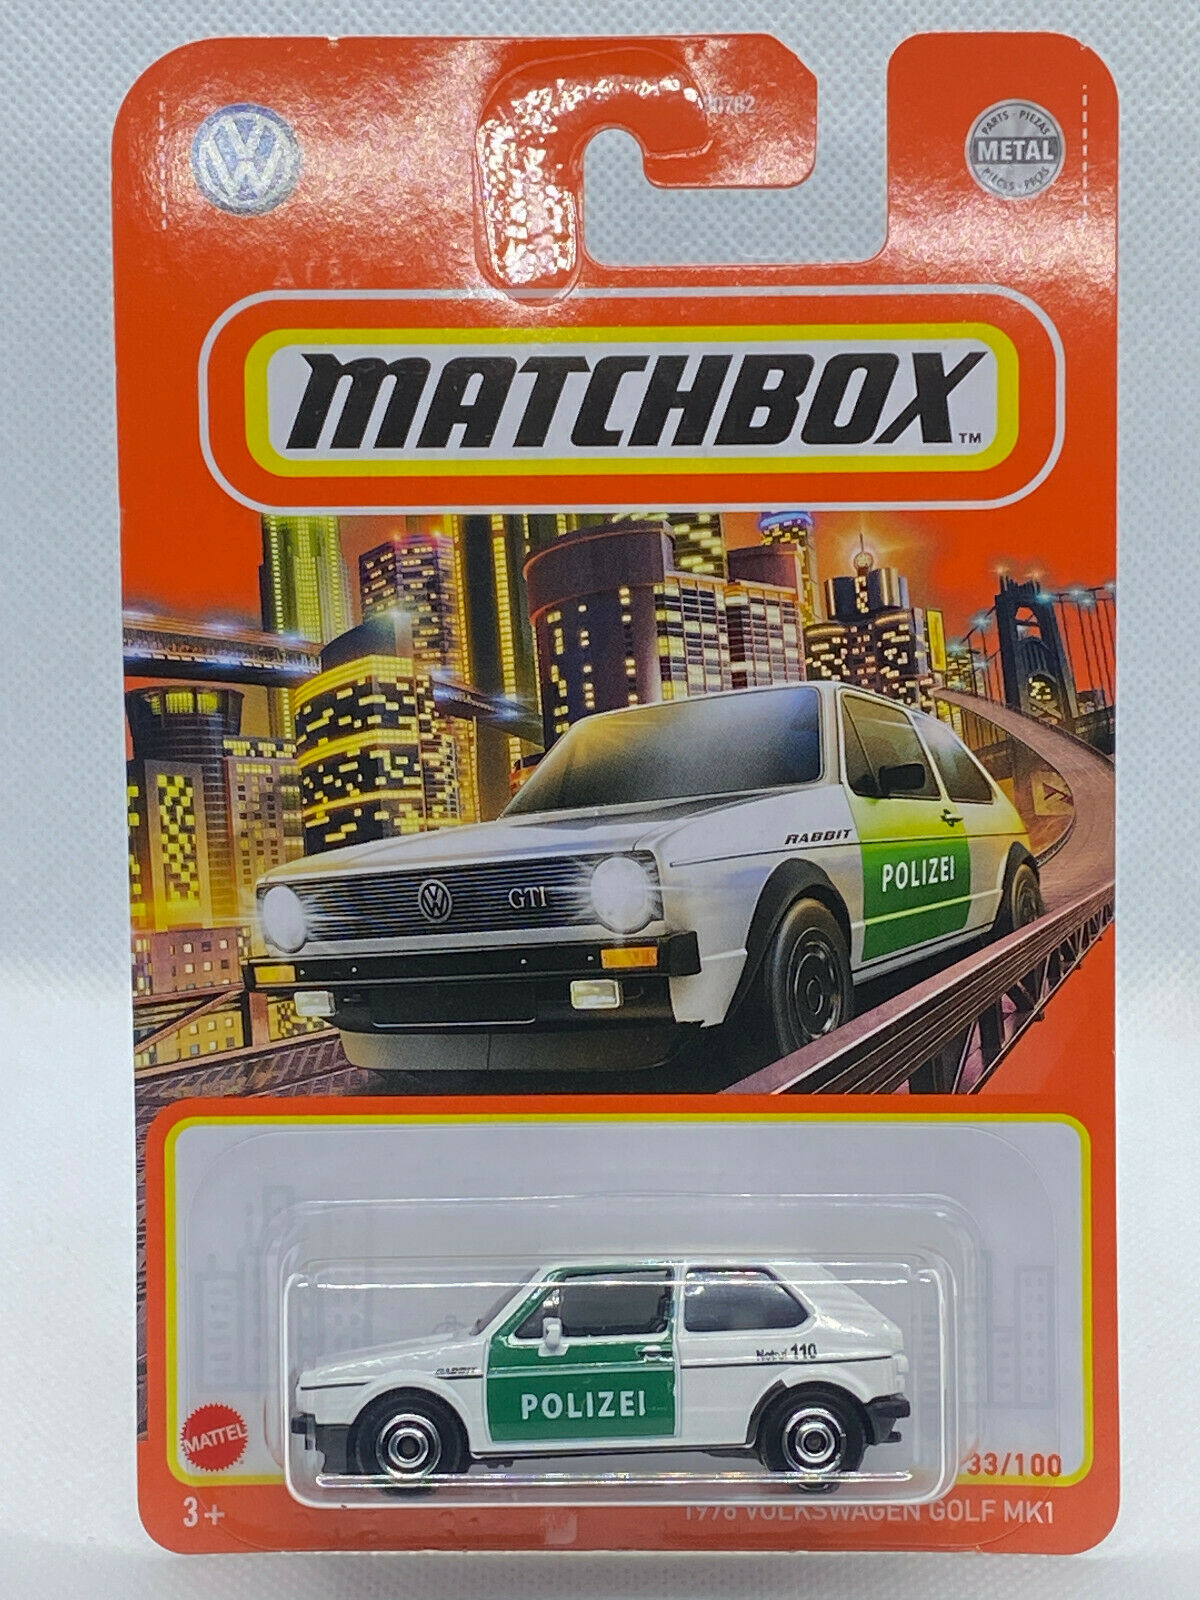 2021 Matchbox 1976 Volkswagen Golf MK1 #33/100 Polizei Police Car NIP